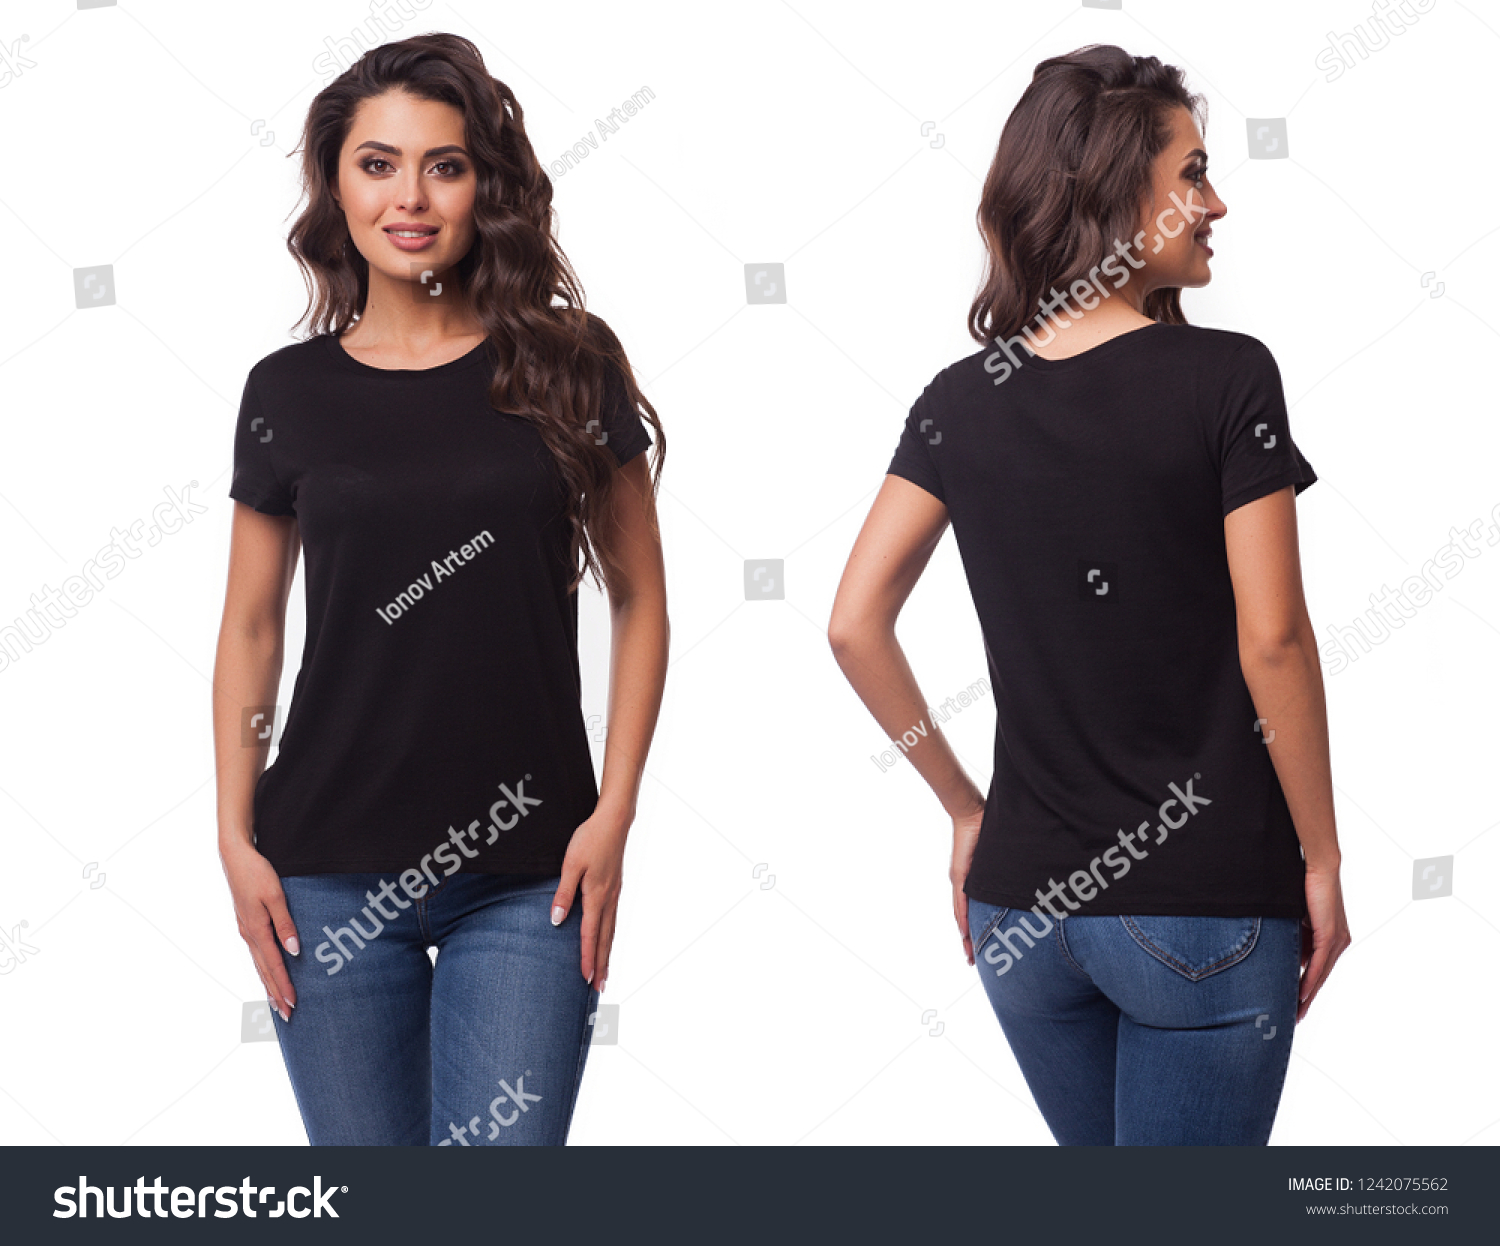 9,970 Black t shirt back female Images, Stock Photos & Vectors ...